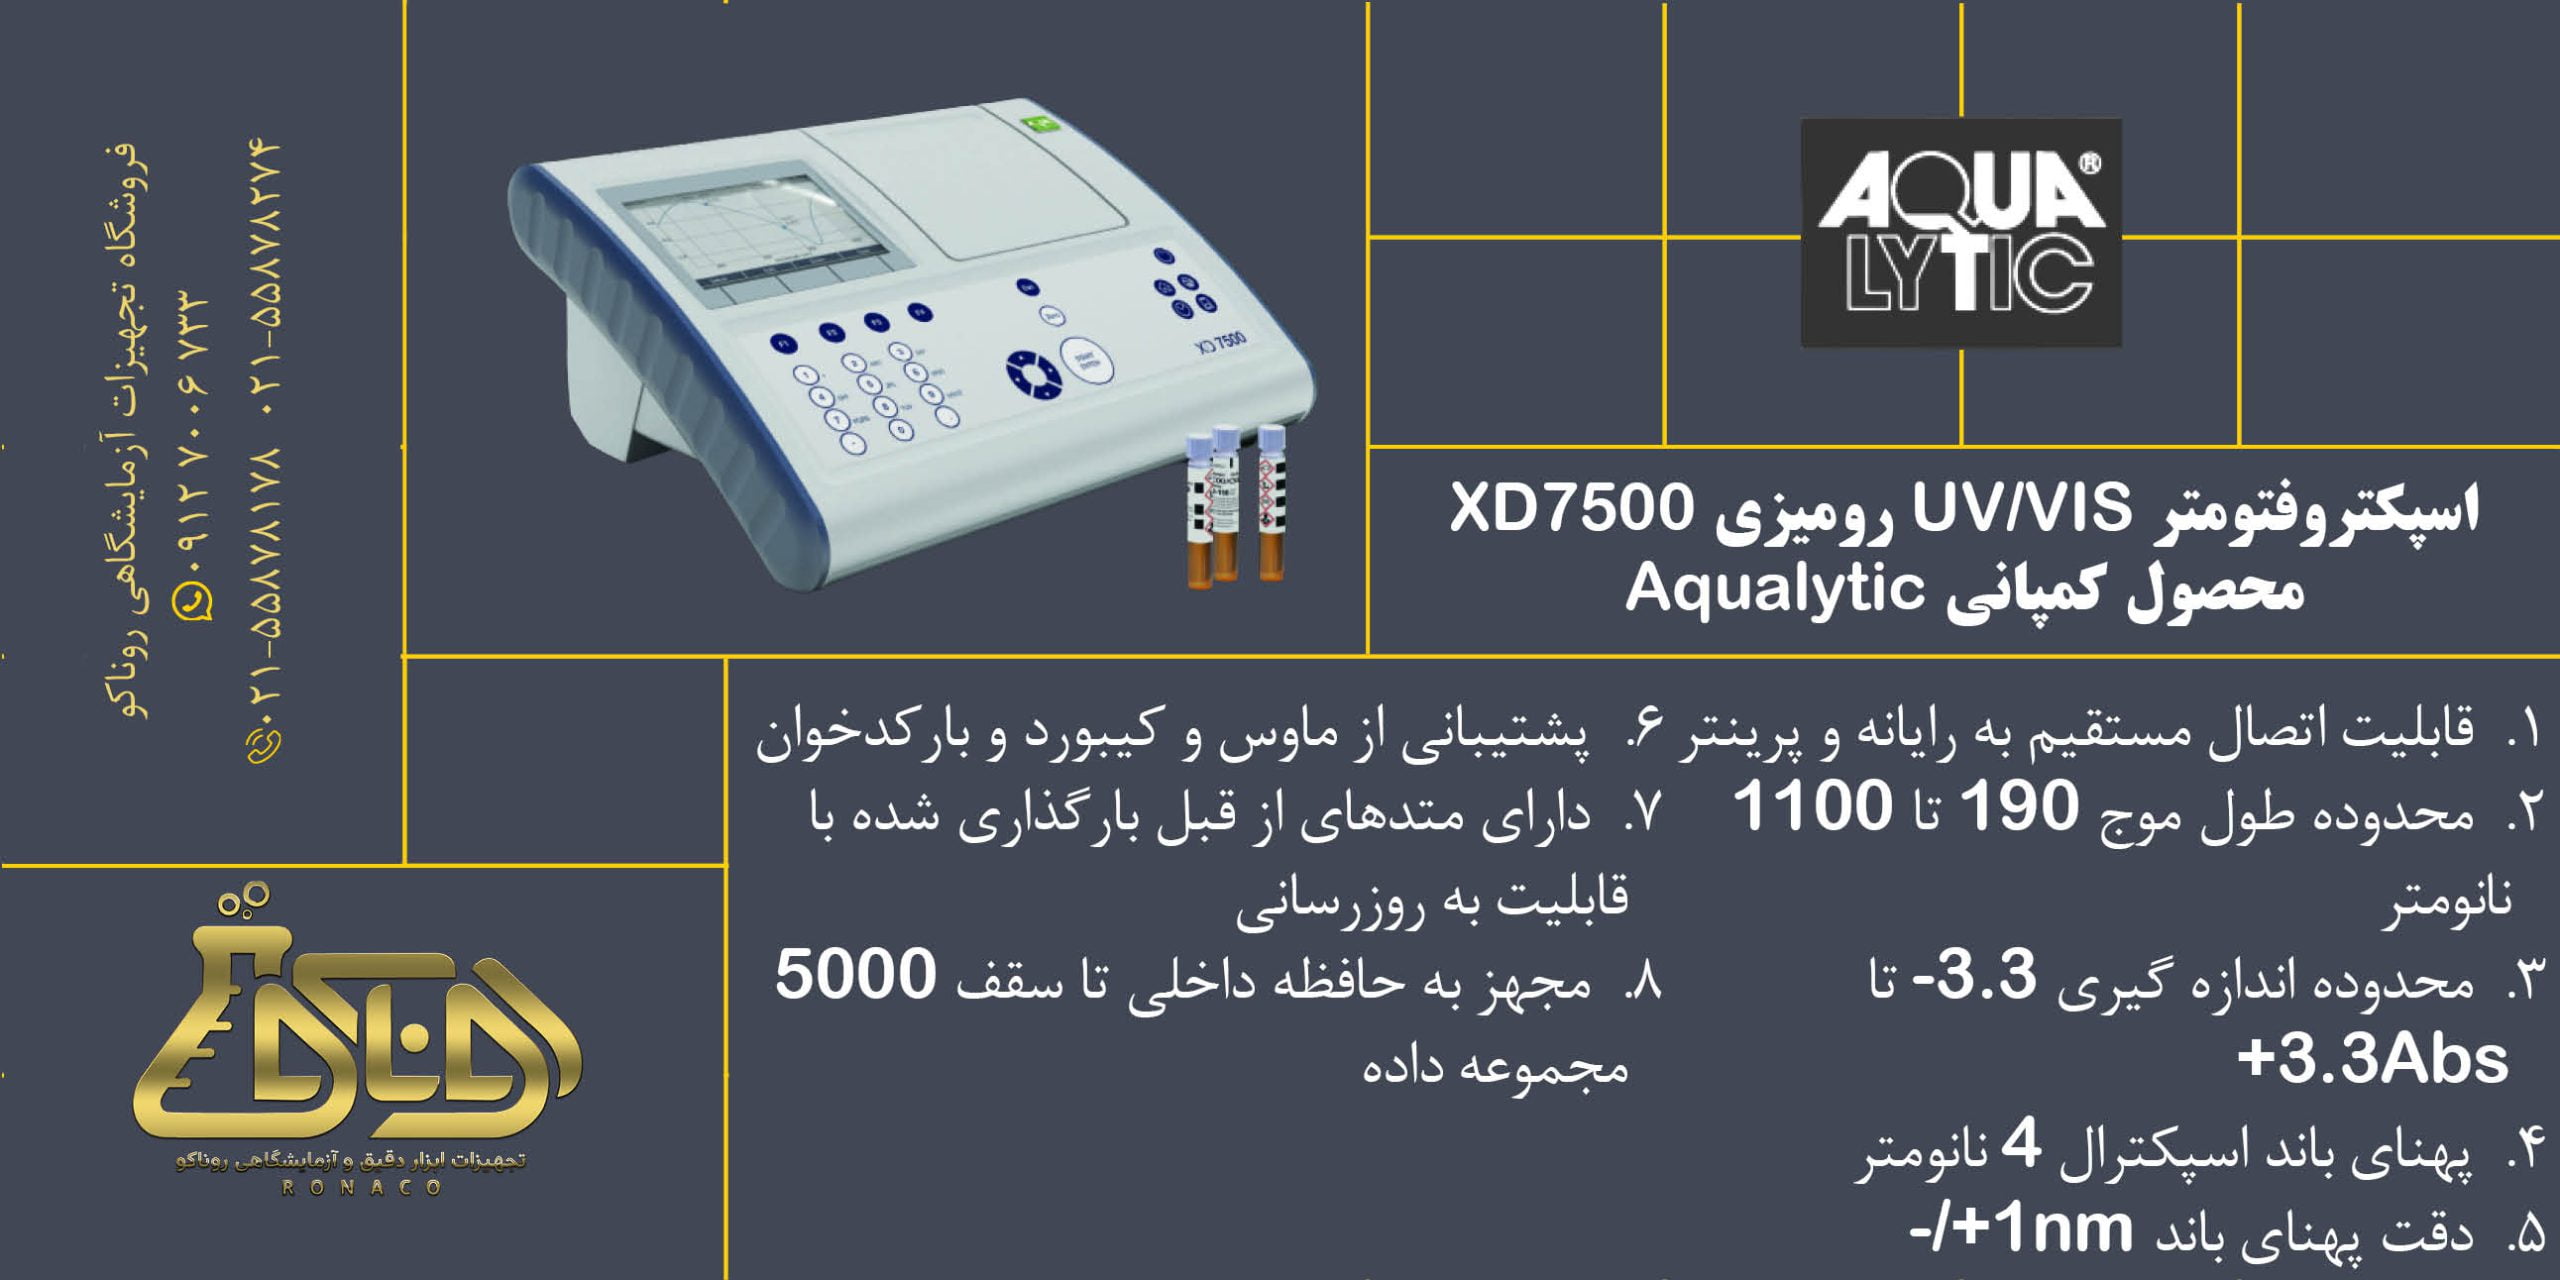 بنر بنر اسپکتروفتومتر UV/VIS رومیزی XD7500 محصول کمپانی Aqualytic آکوالیتیک (لاویباند)